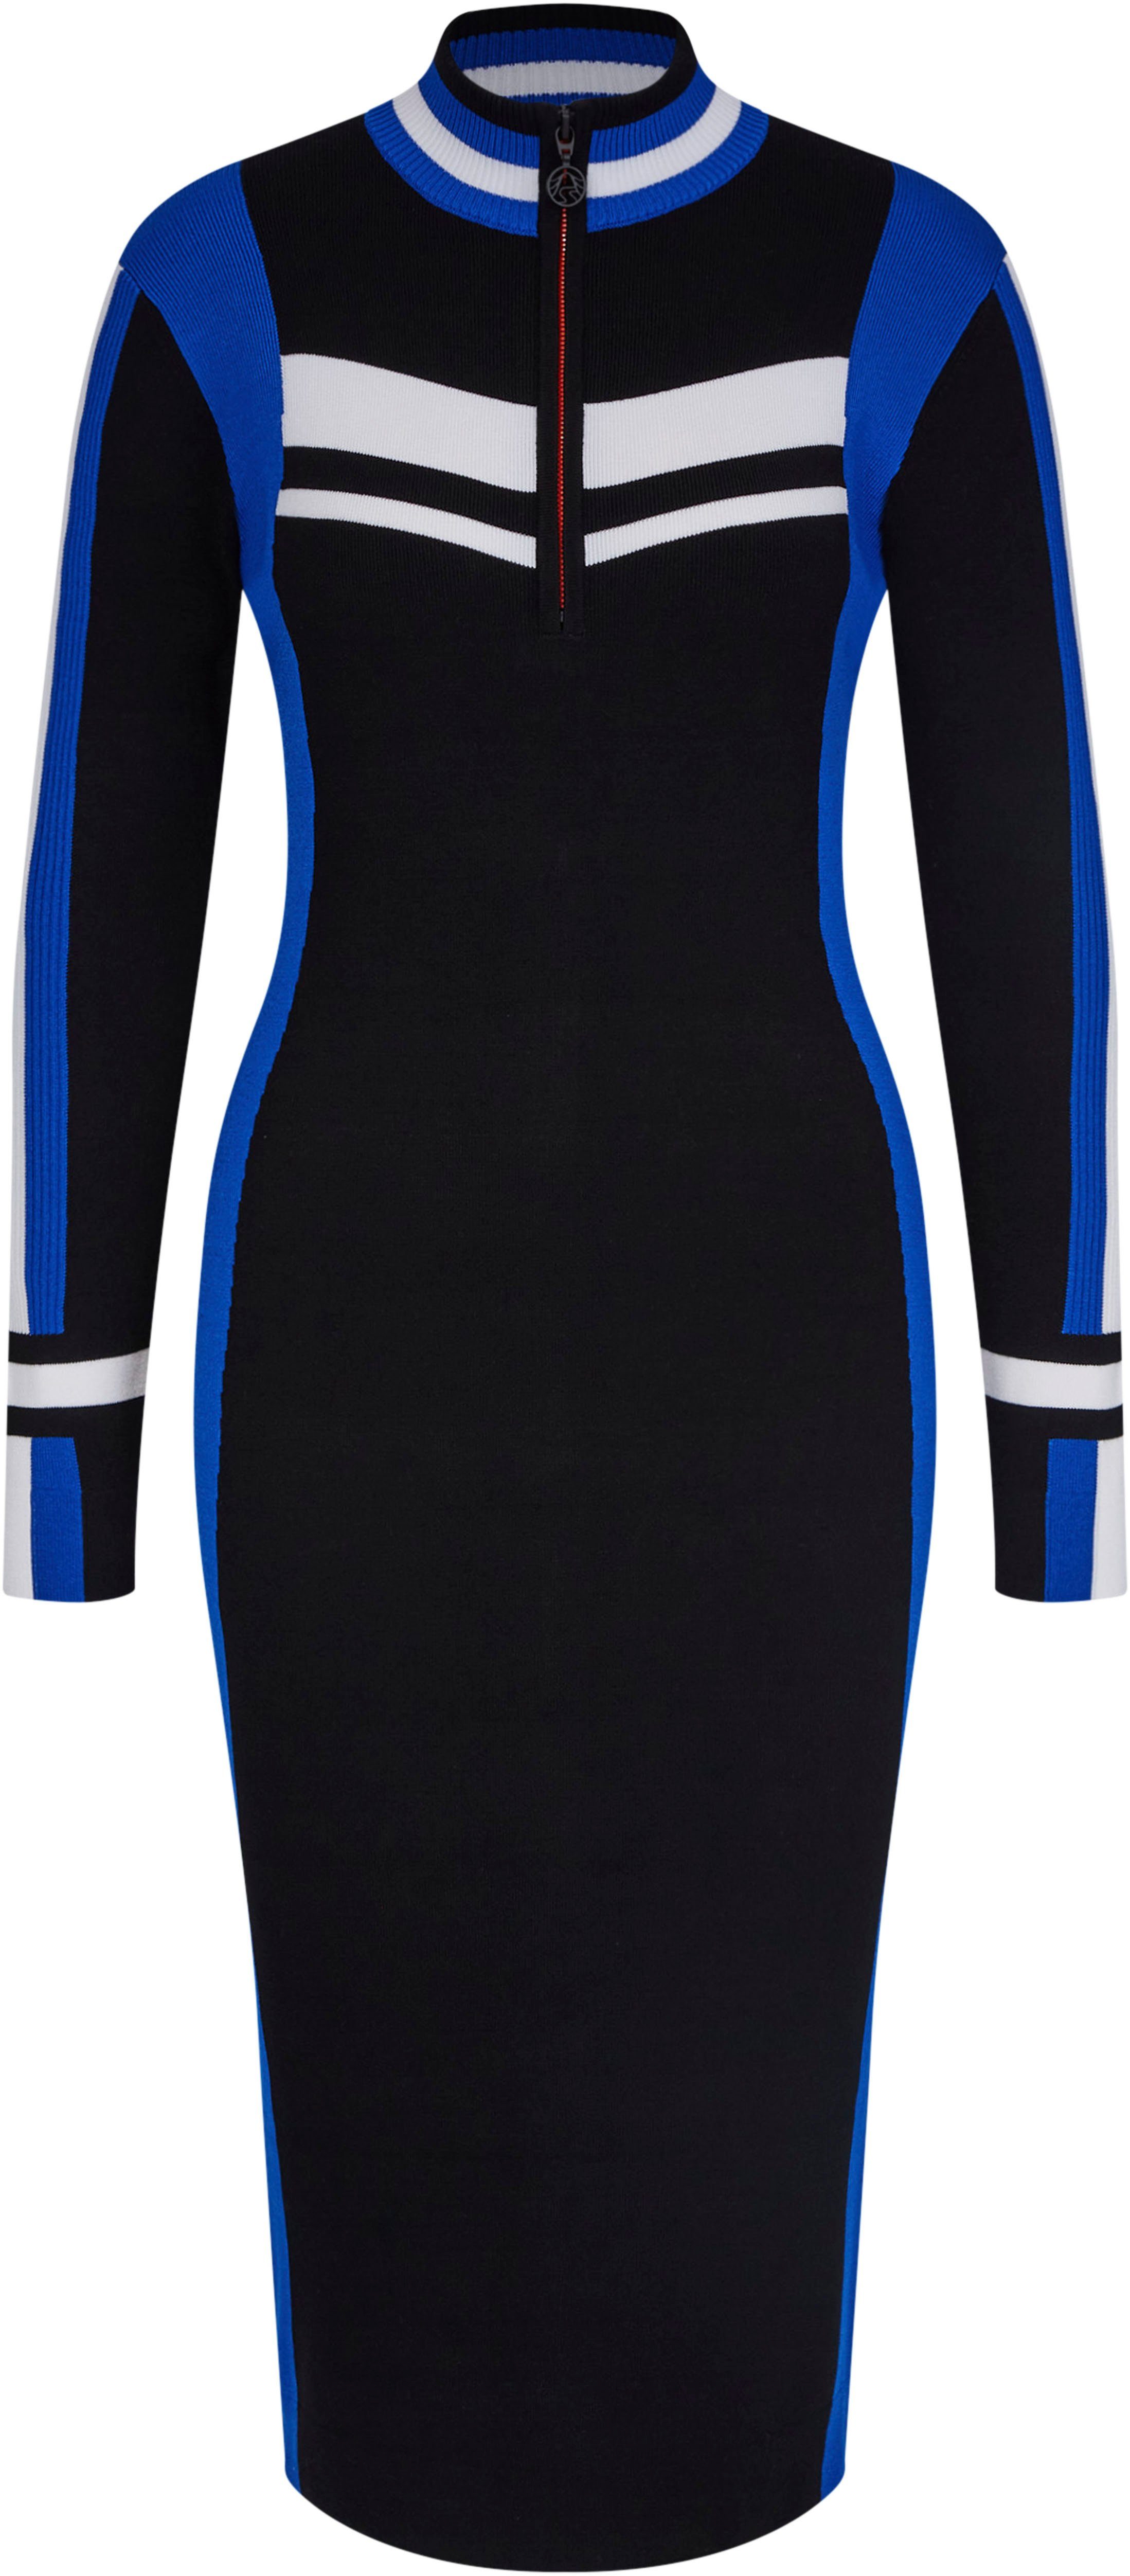 Sportalm Kitzbühel Strickkleid mit Reißverschluss, Extravagantes Kleid, ein  echter Eyecatcher | Strickkleider